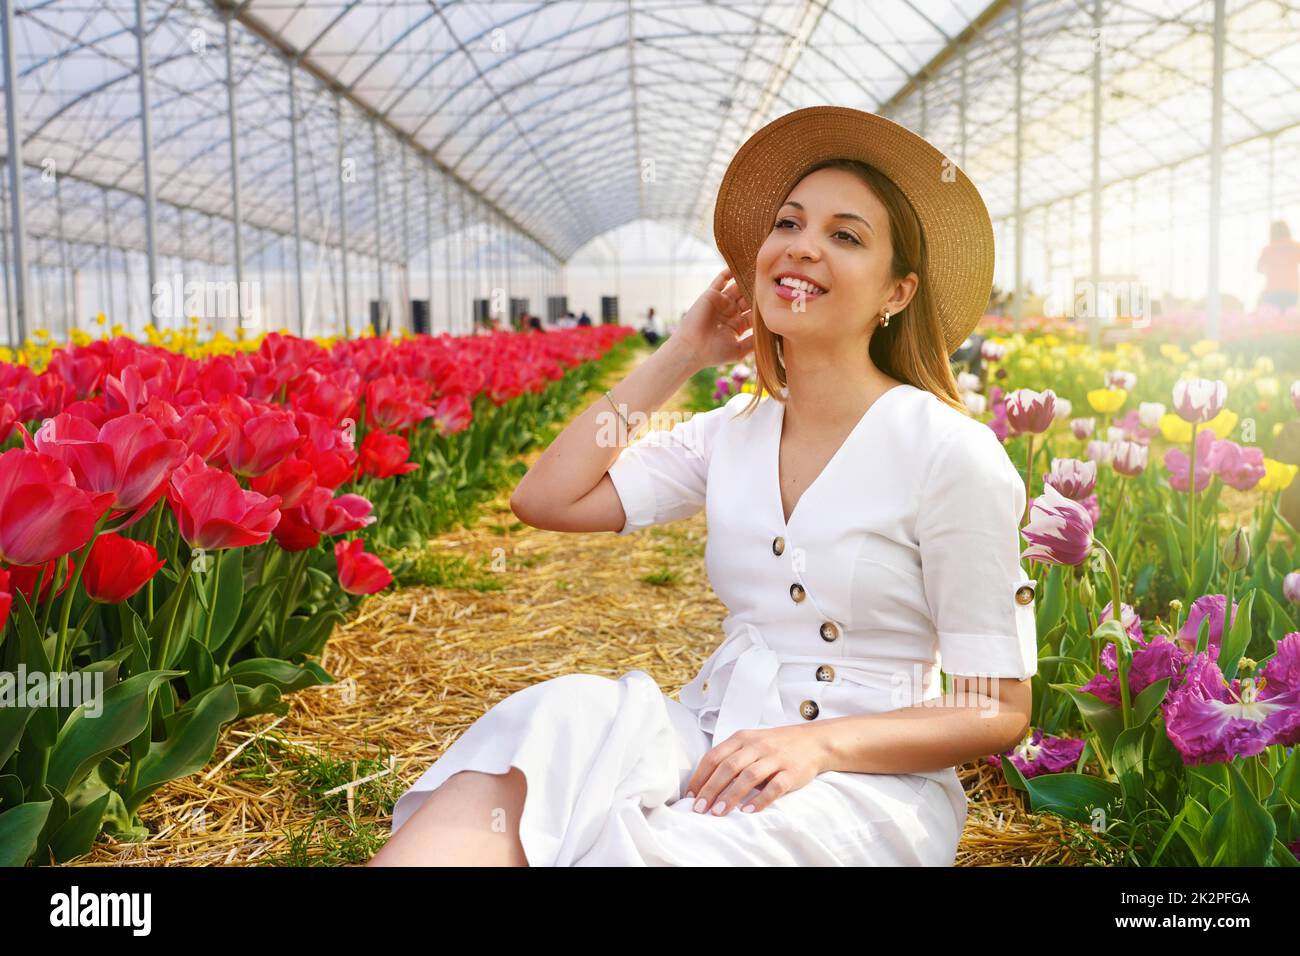 Ziemlich schönes Mädchen mit Strohhut sitzt zwischen Tulpen Feld im Gewächshaus Stockfoto